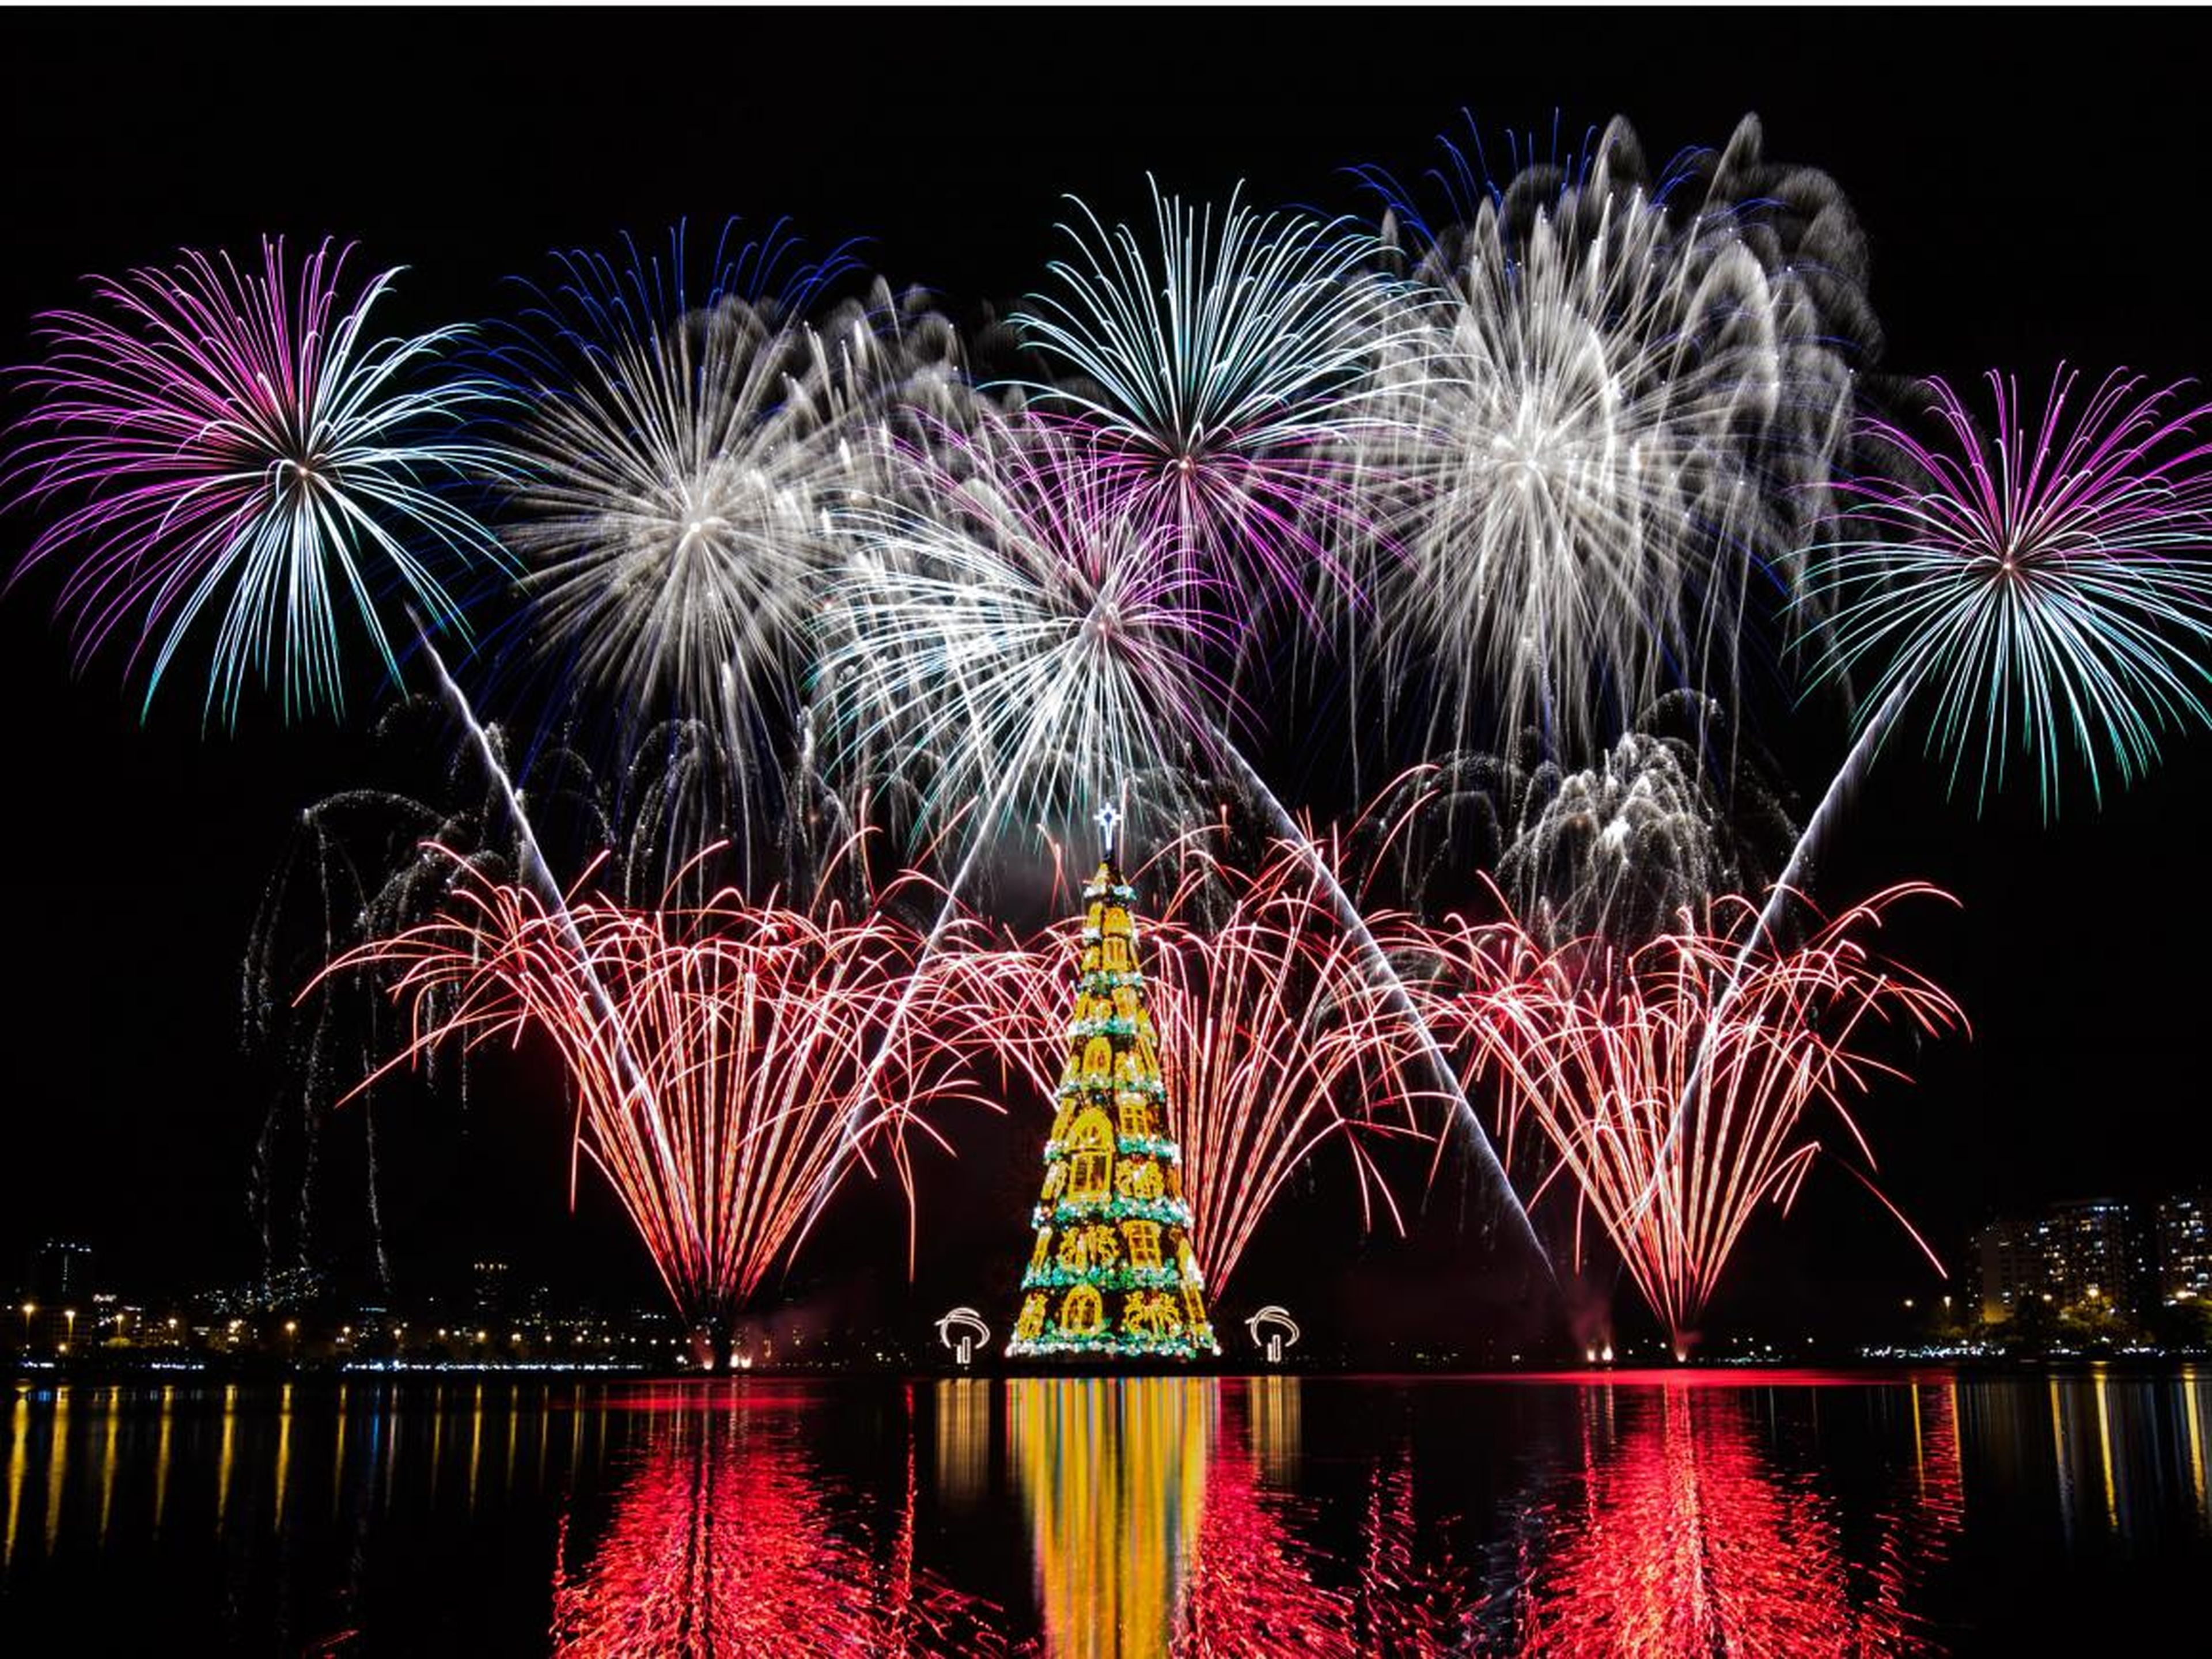 Vista de fuegos artificiales durante la inauguración de un árbol de Navidad flotante de 85 metros de altura en la laguna Rodrigo de Freitas en Río de Janeiro, Brasil, el 29 de noviembre de 2014.